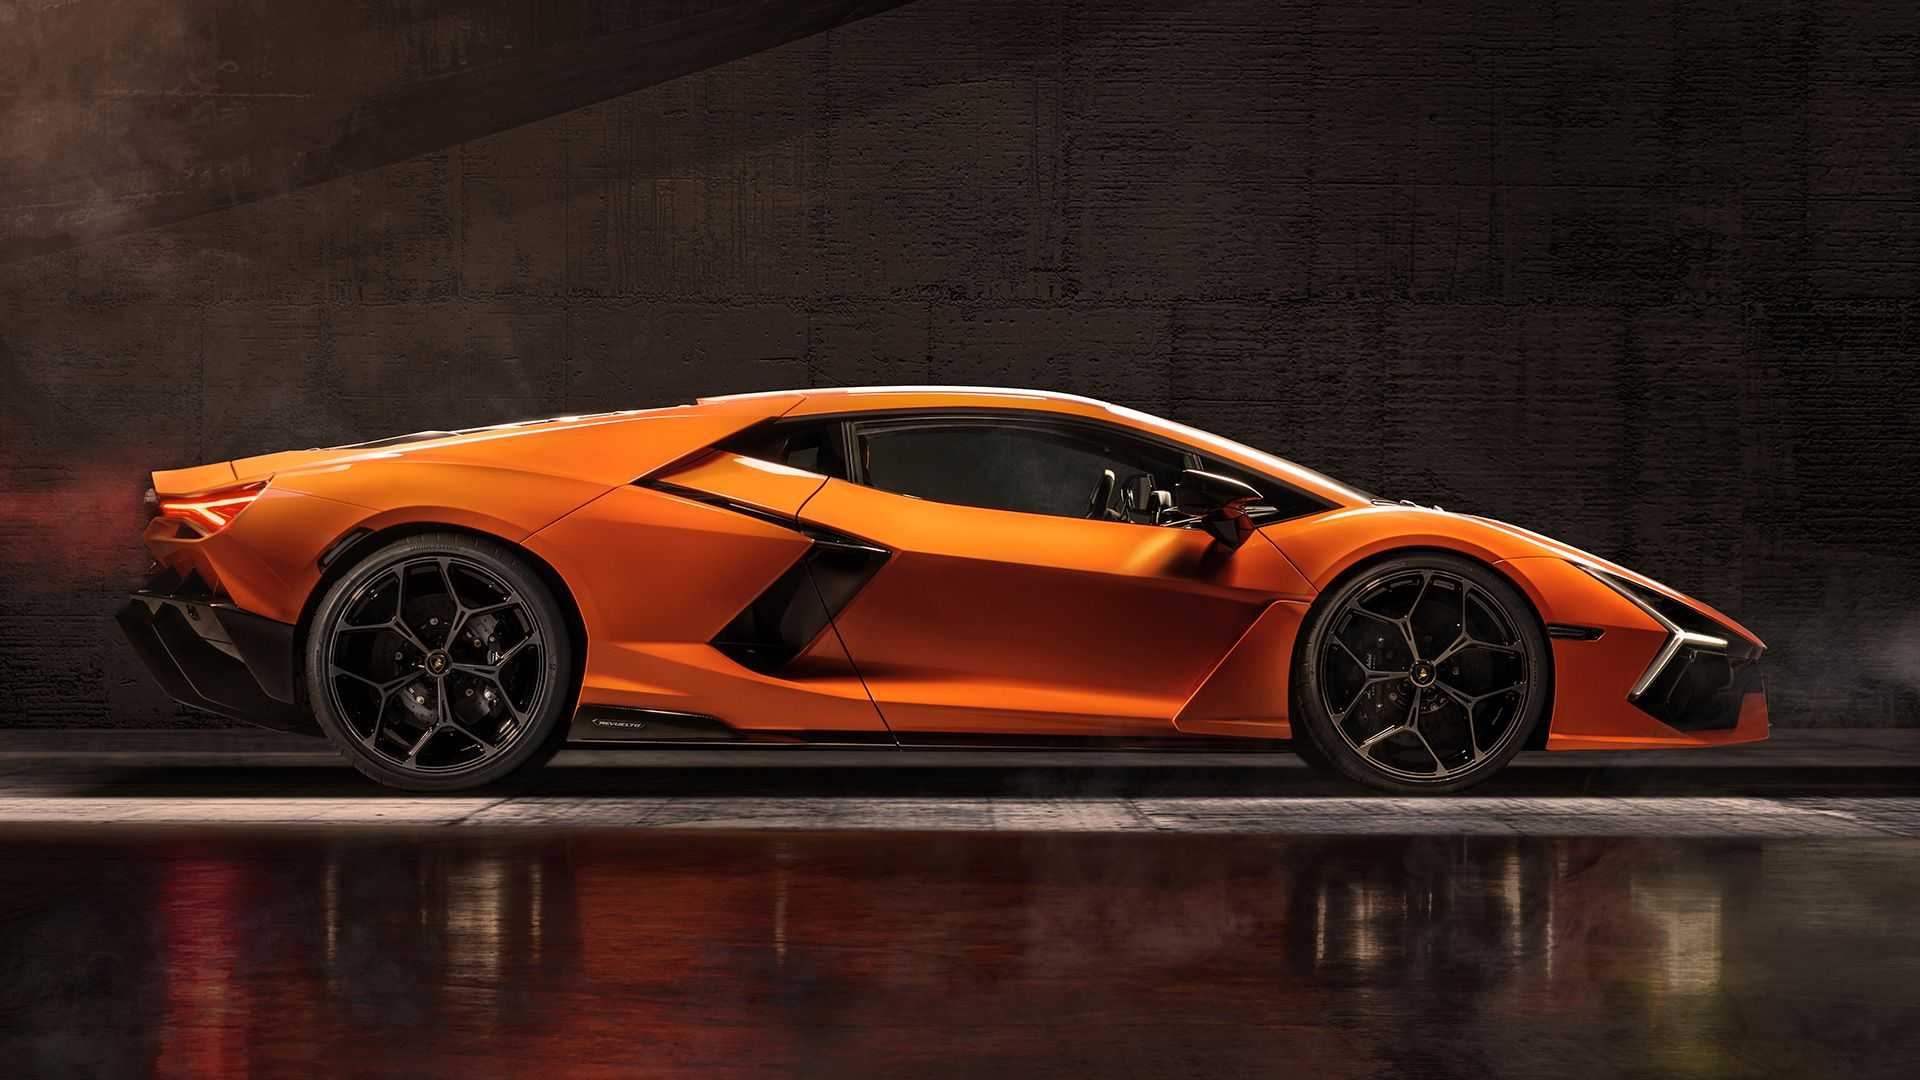 Ra mắt Lamborghini Revuelto thế chỗ Aventador: Siêu xe mạnh nhất lịch sử hãng nhưng đi phố chỉ ngang cơ Civic - ảnh 13